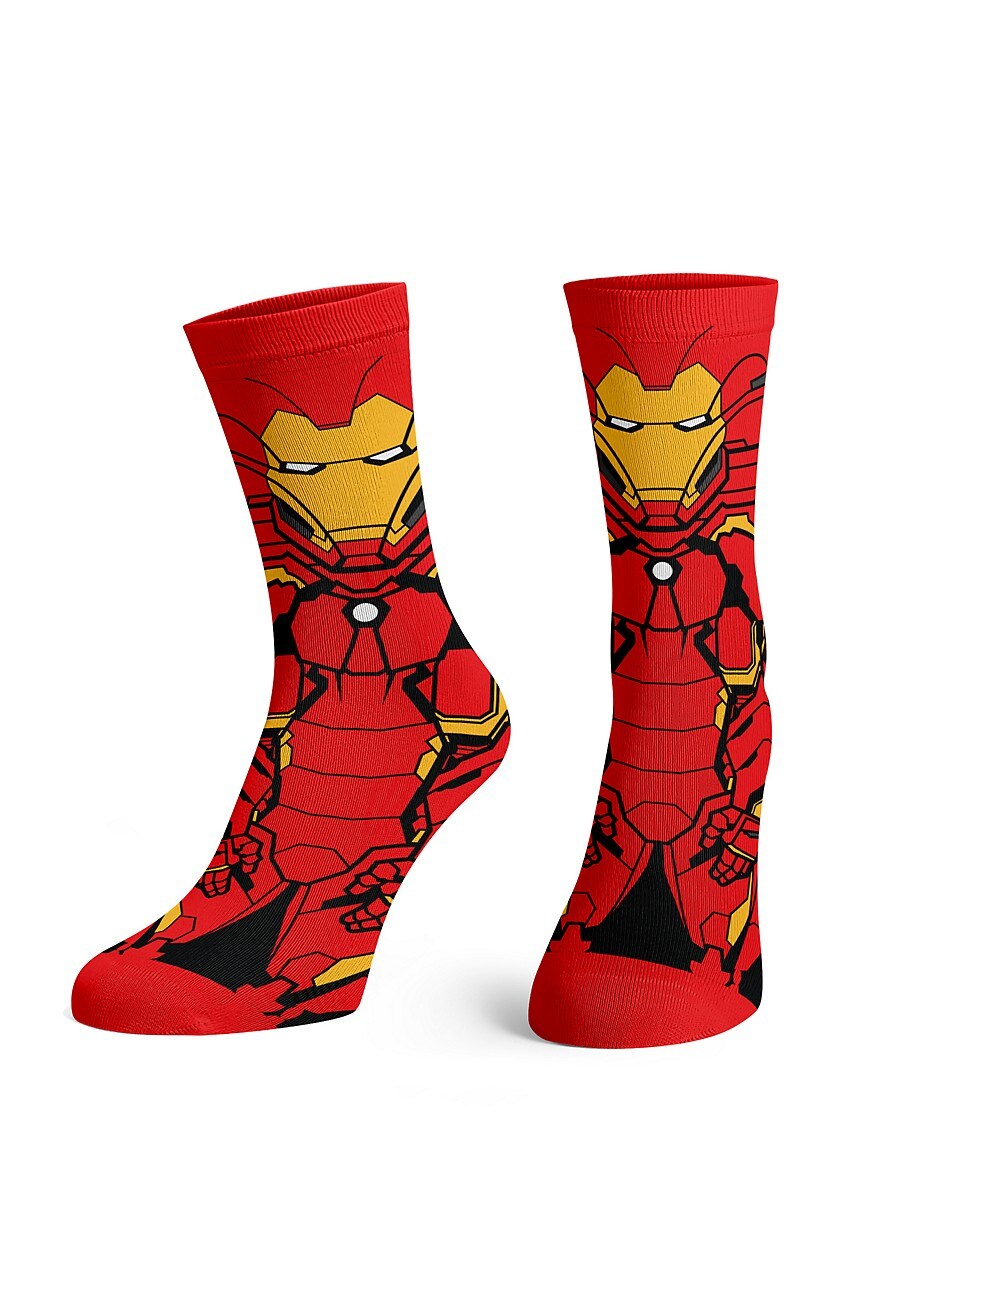 Wholesale Avengers 5pk Socks- 6-8.5 Size MULTI